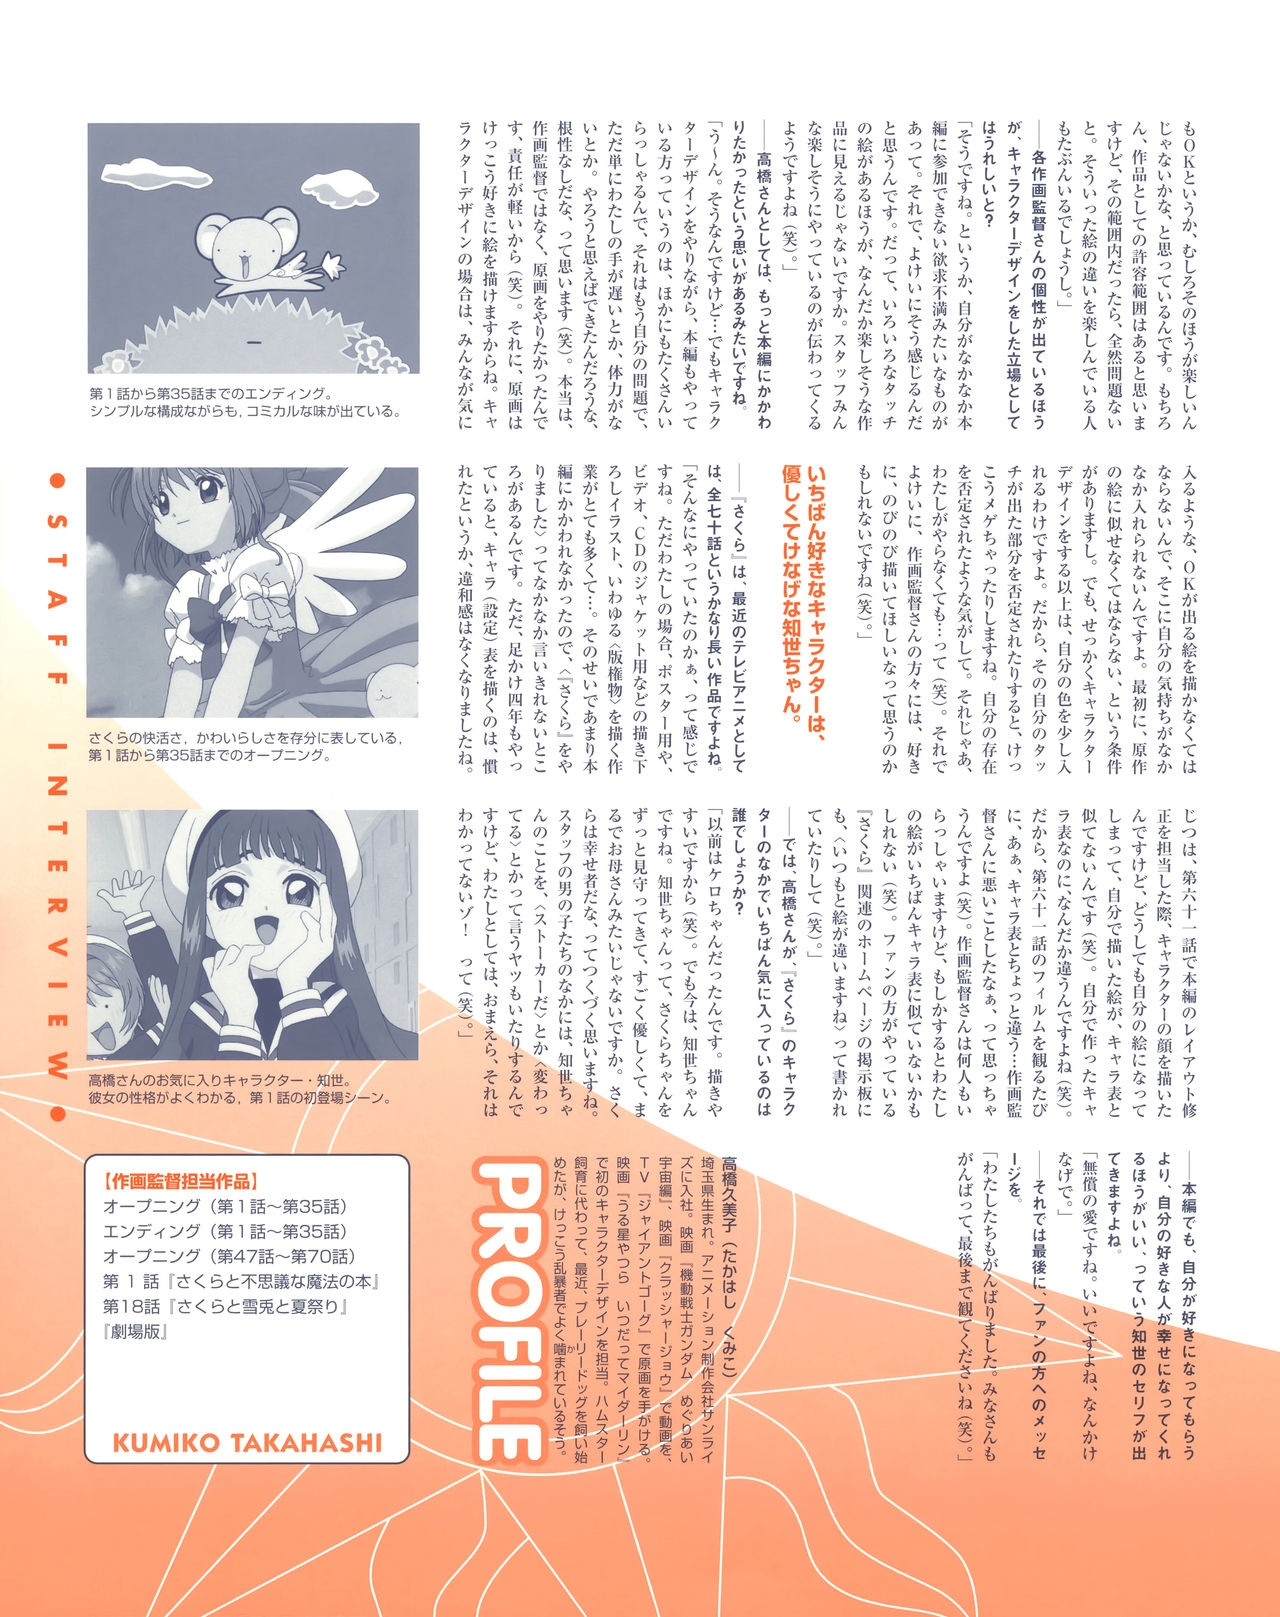 Cheerio! 2 - TV Animation Cardcaptor Sakura Illust Collection 95